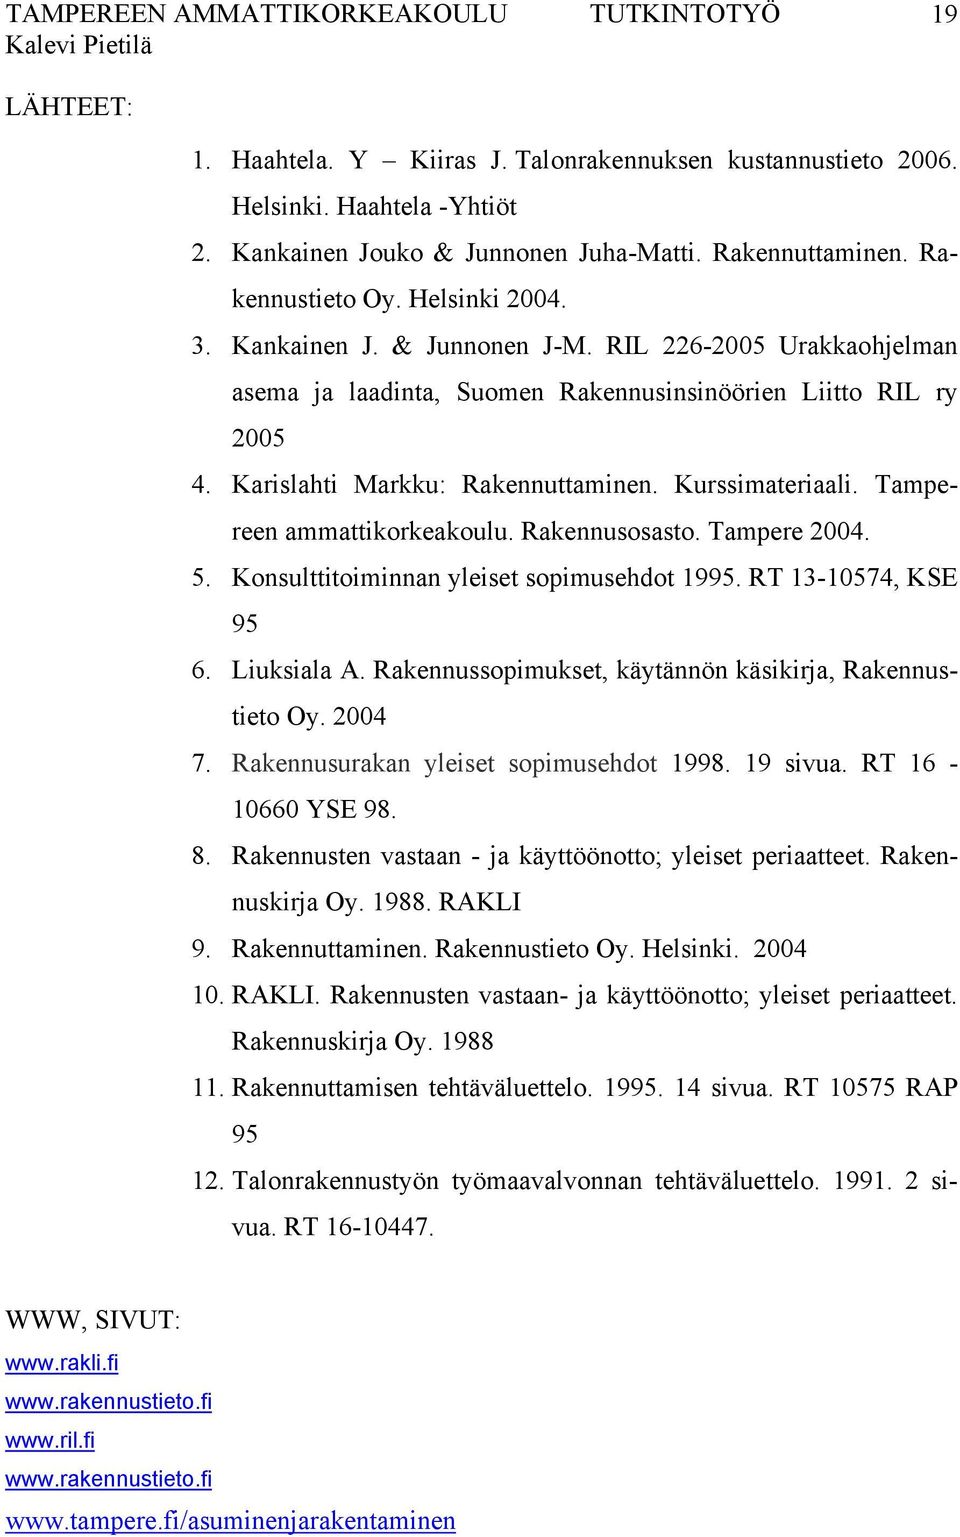 Karislahti Markku: Rakennuttaminen. Kurssimateriaali. Tampereen ammattikorkeakoulu. Rakennusosasto. Tampere 2004. 5. Konsulttitoiminnan yleiset sopimusehdot 1995. RT 13-10574, KSE 95 6. Liuksiala A.